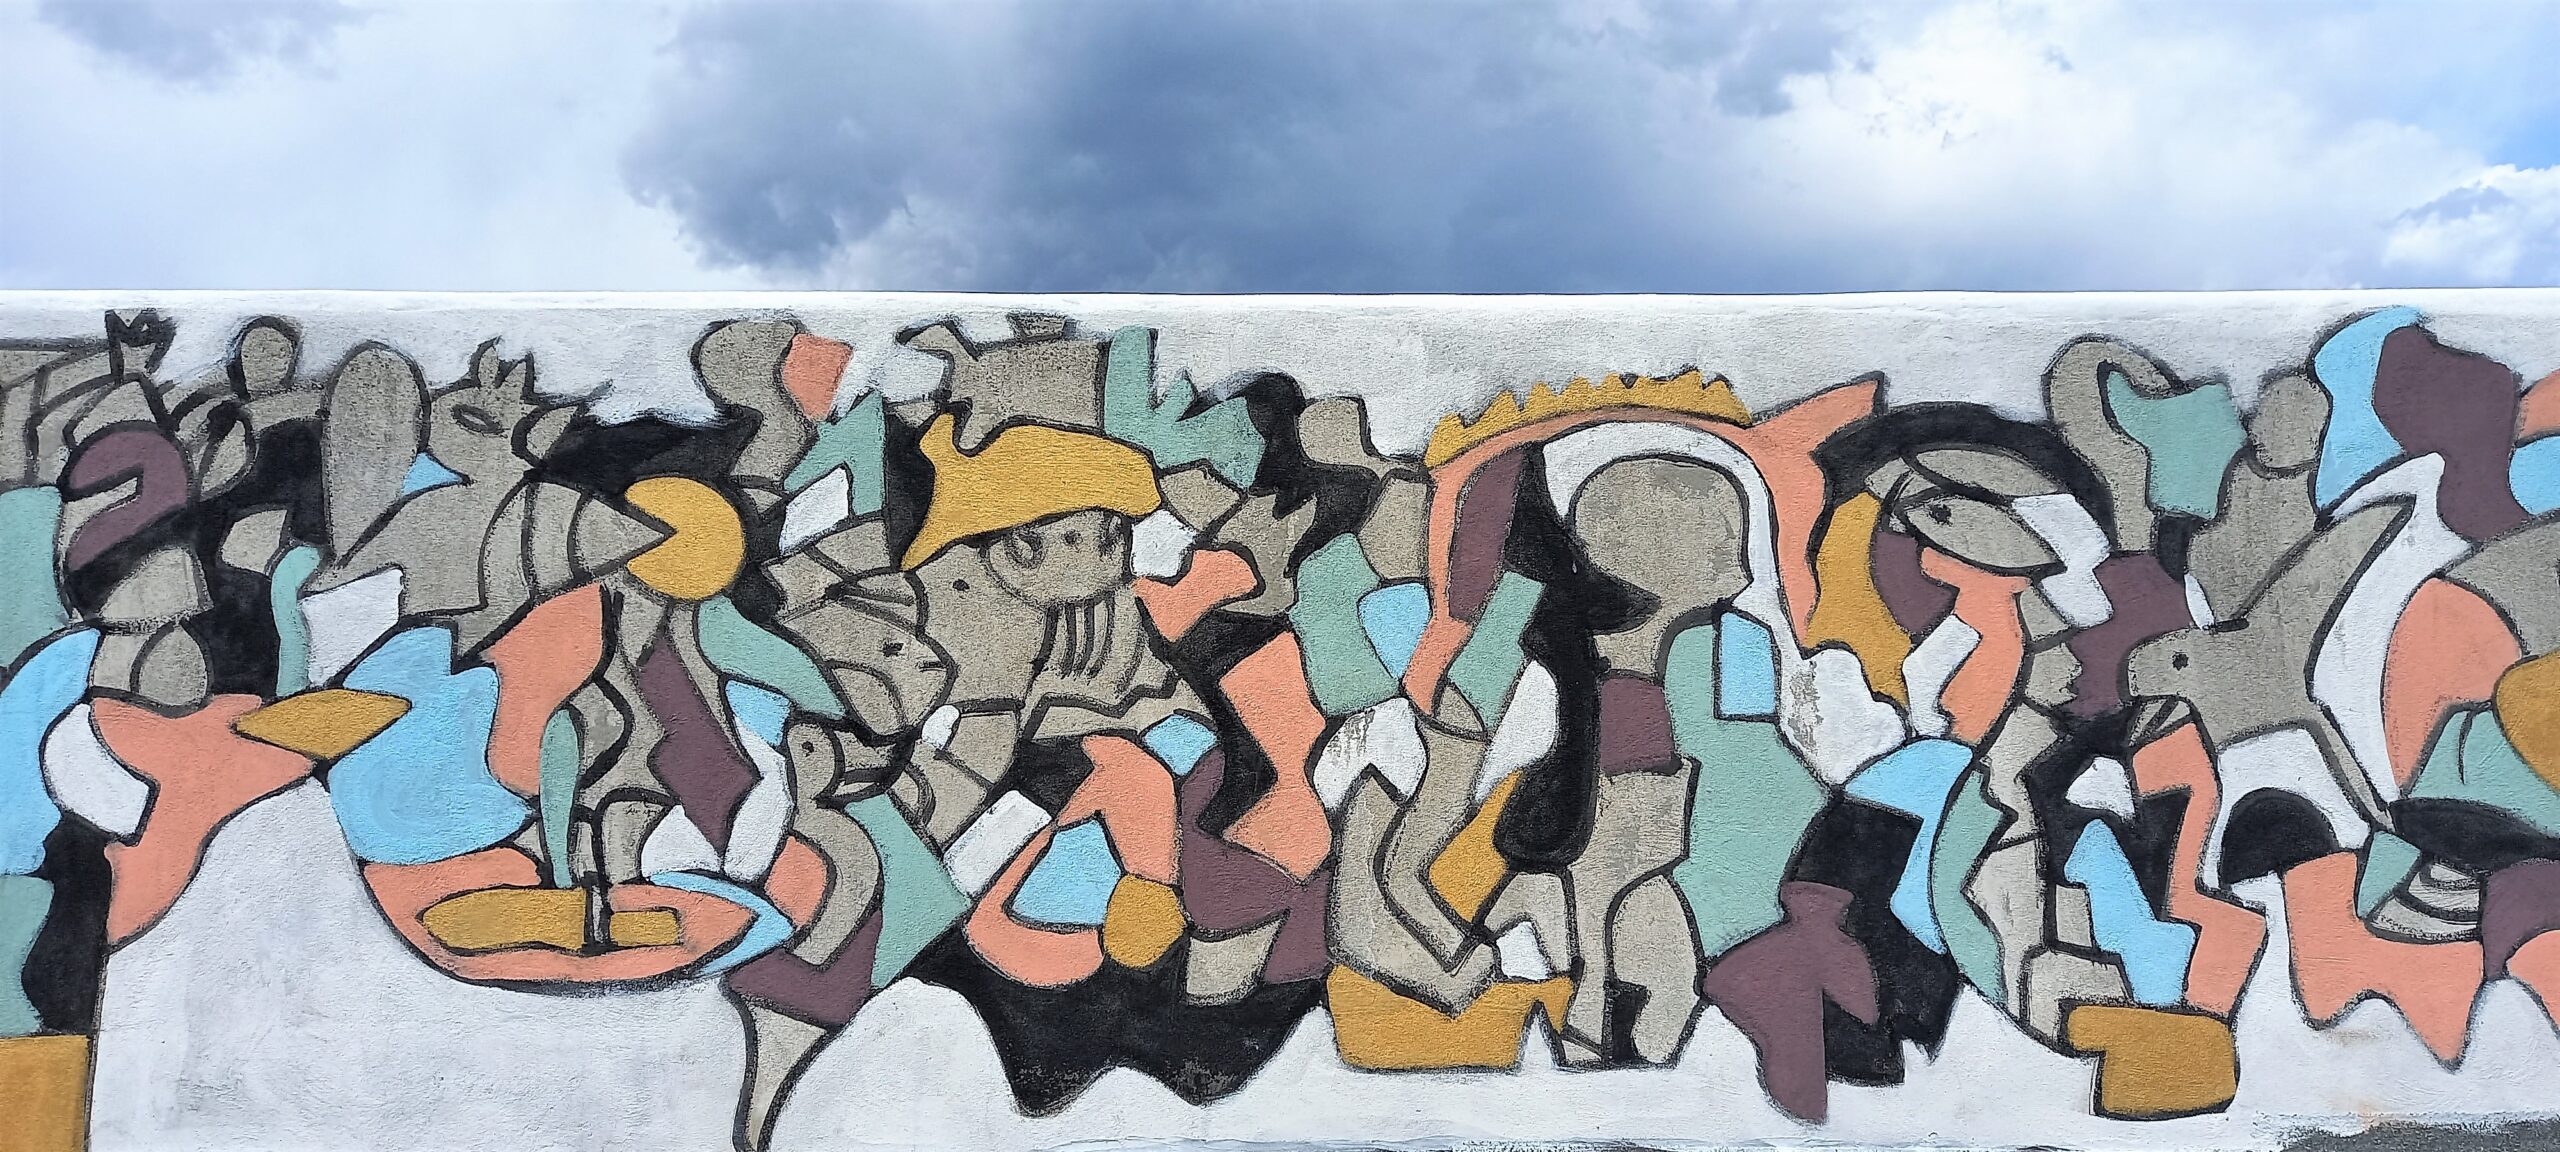 2 algorithmes de peintures murales de la paix par l'artiste sicilien cortile delle nevi